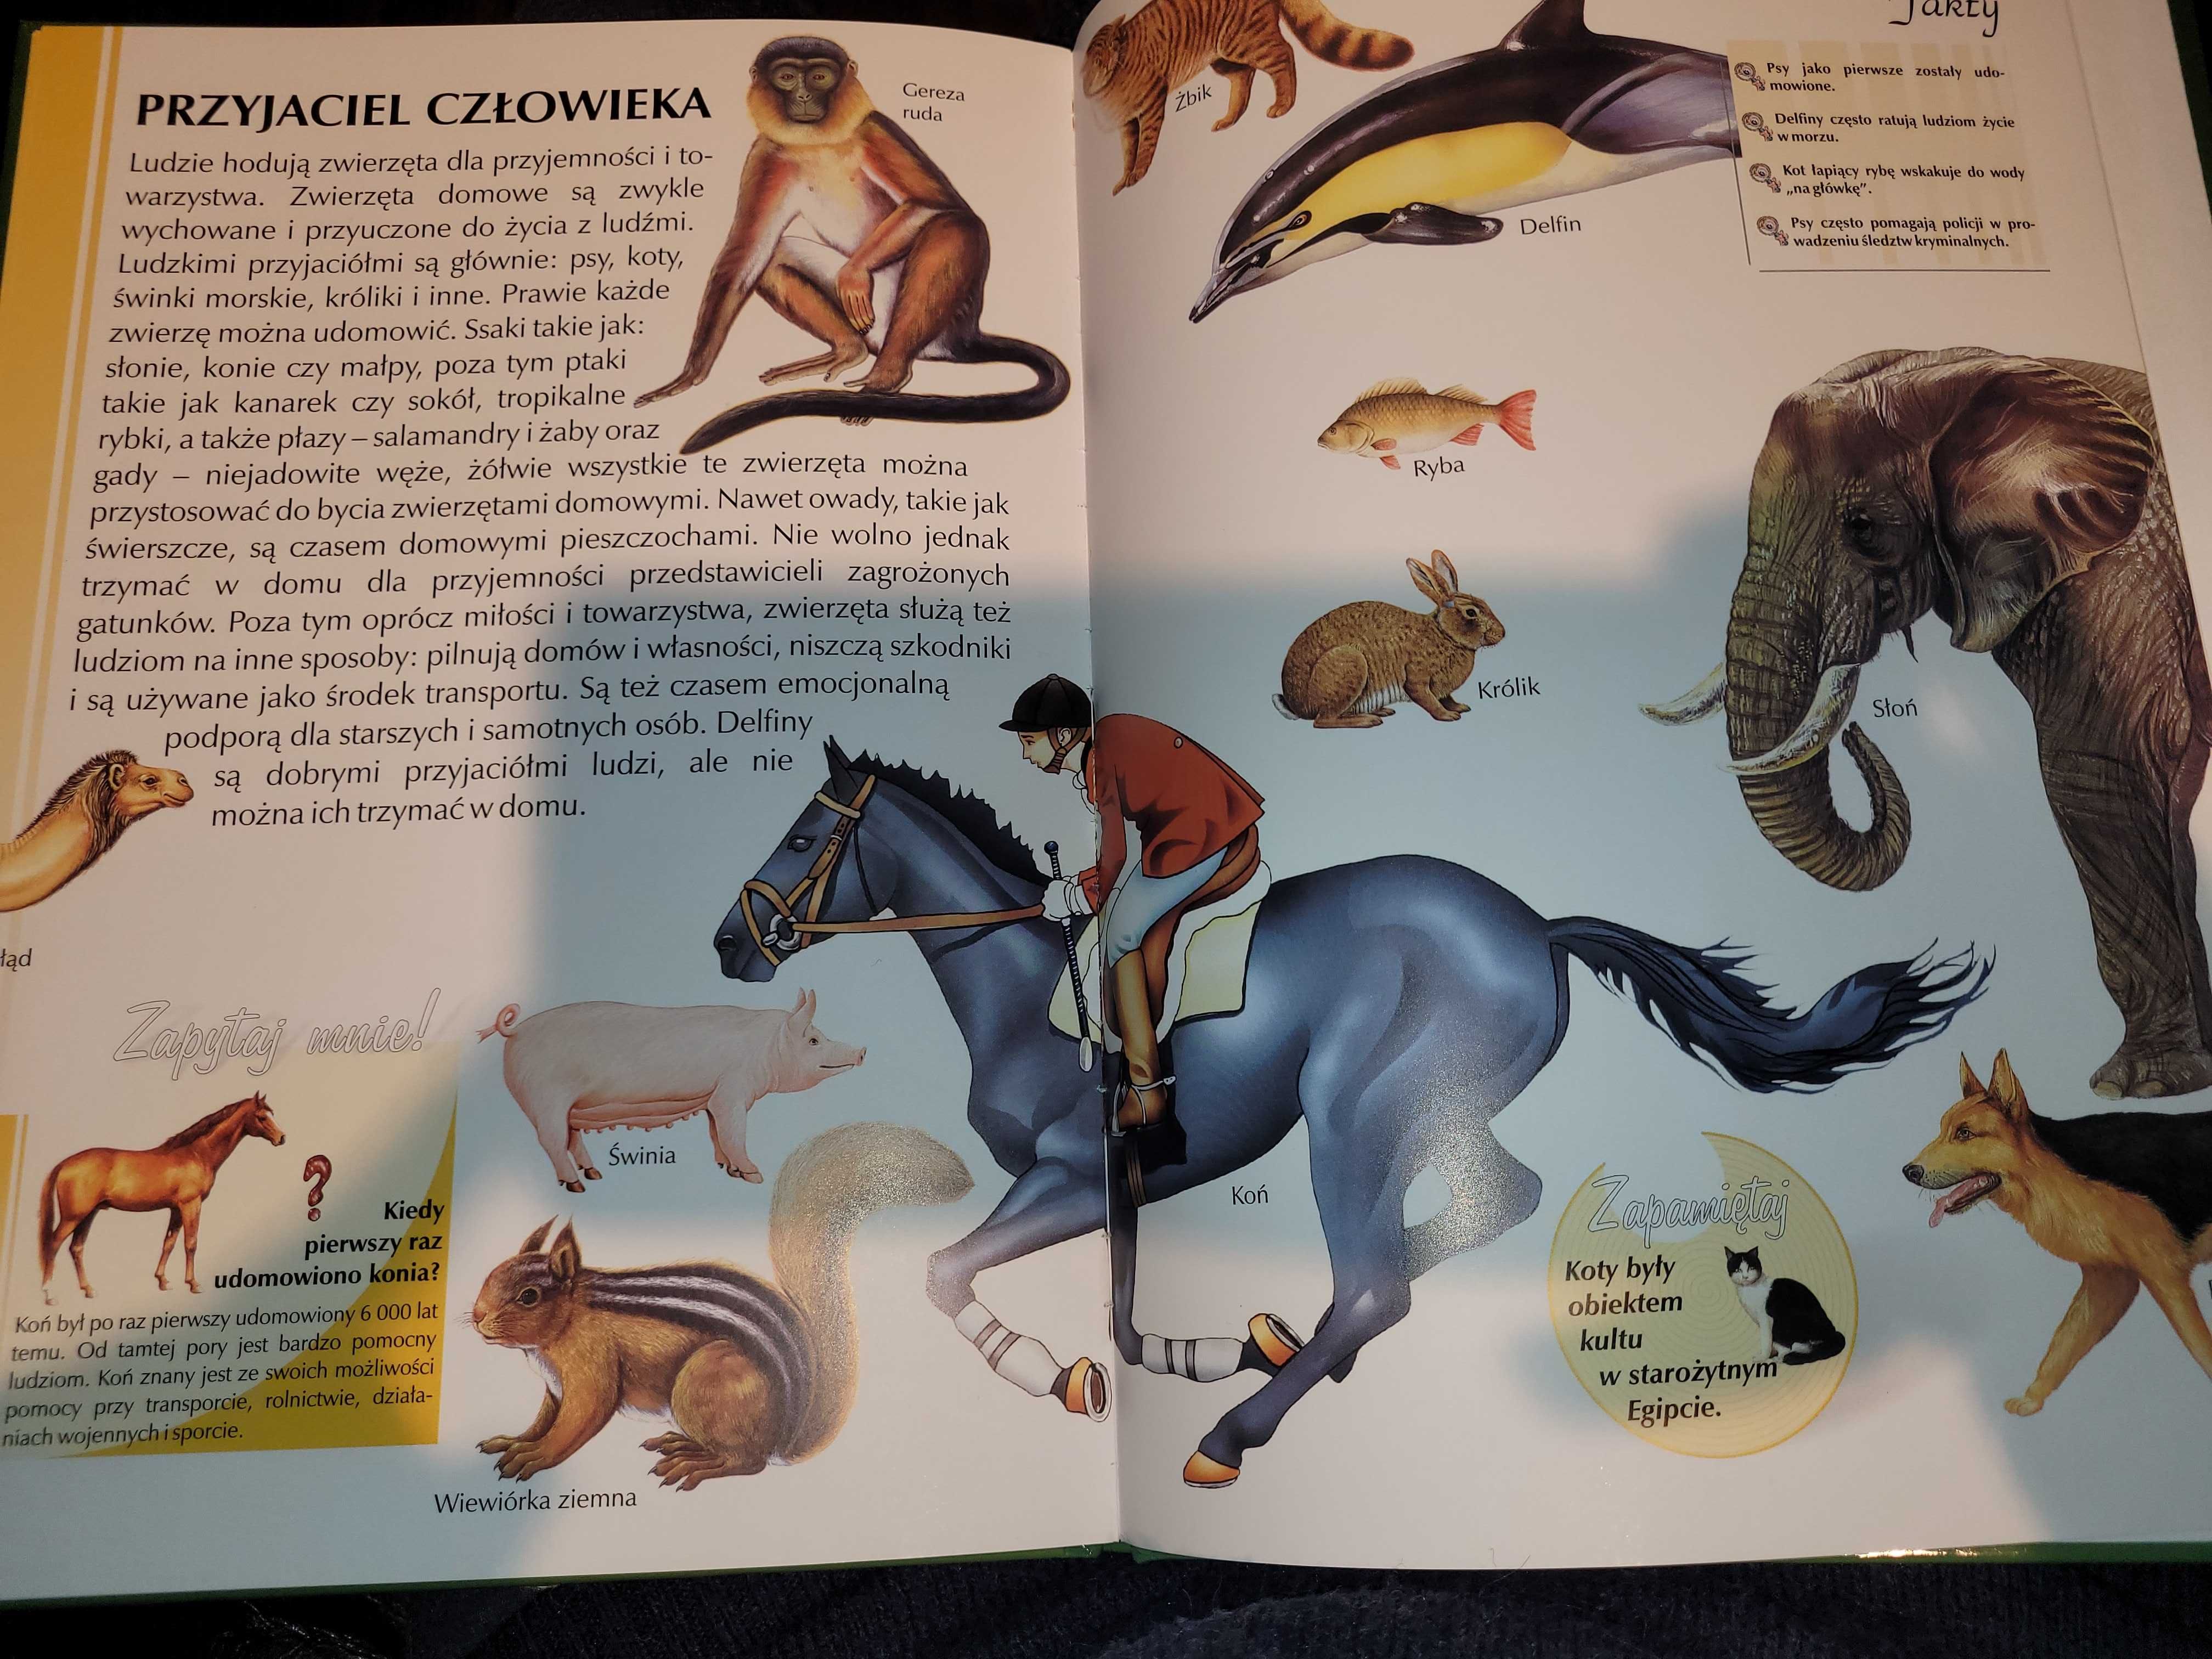 Książki "Co warto wiedzieć o krajach" i "Encyklopedia zwierzęta"